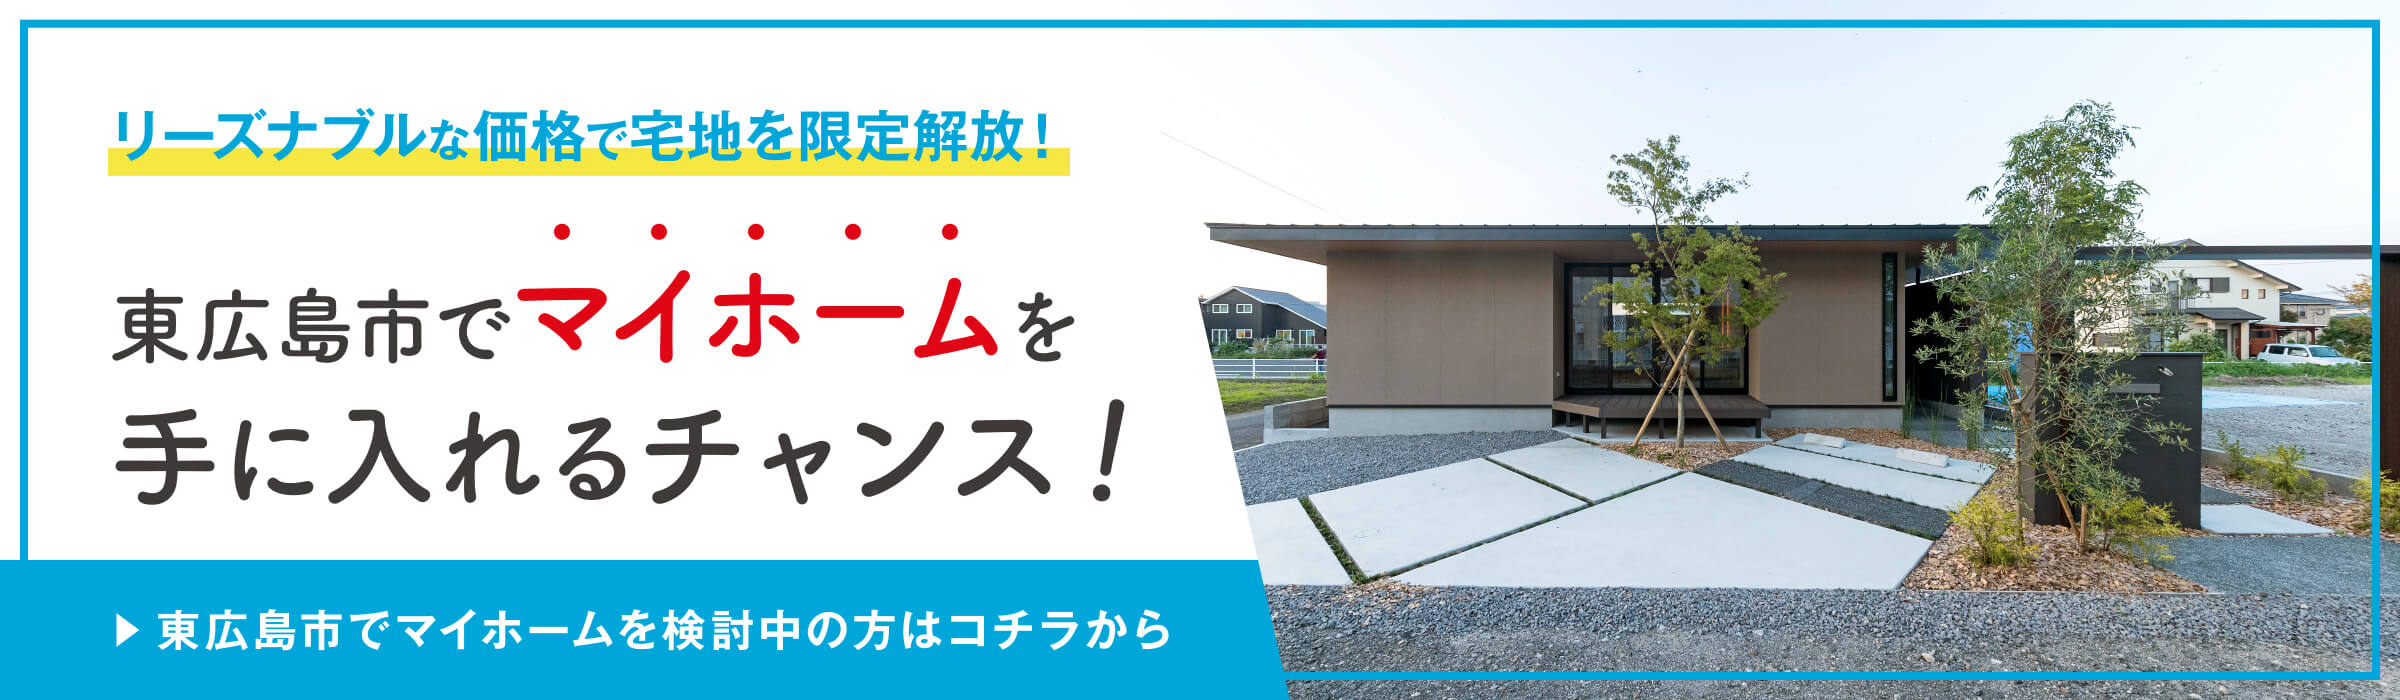 東広島市でリーズナブルな価格で宅地を限定解放！マイホームを手に入れるチャンス！